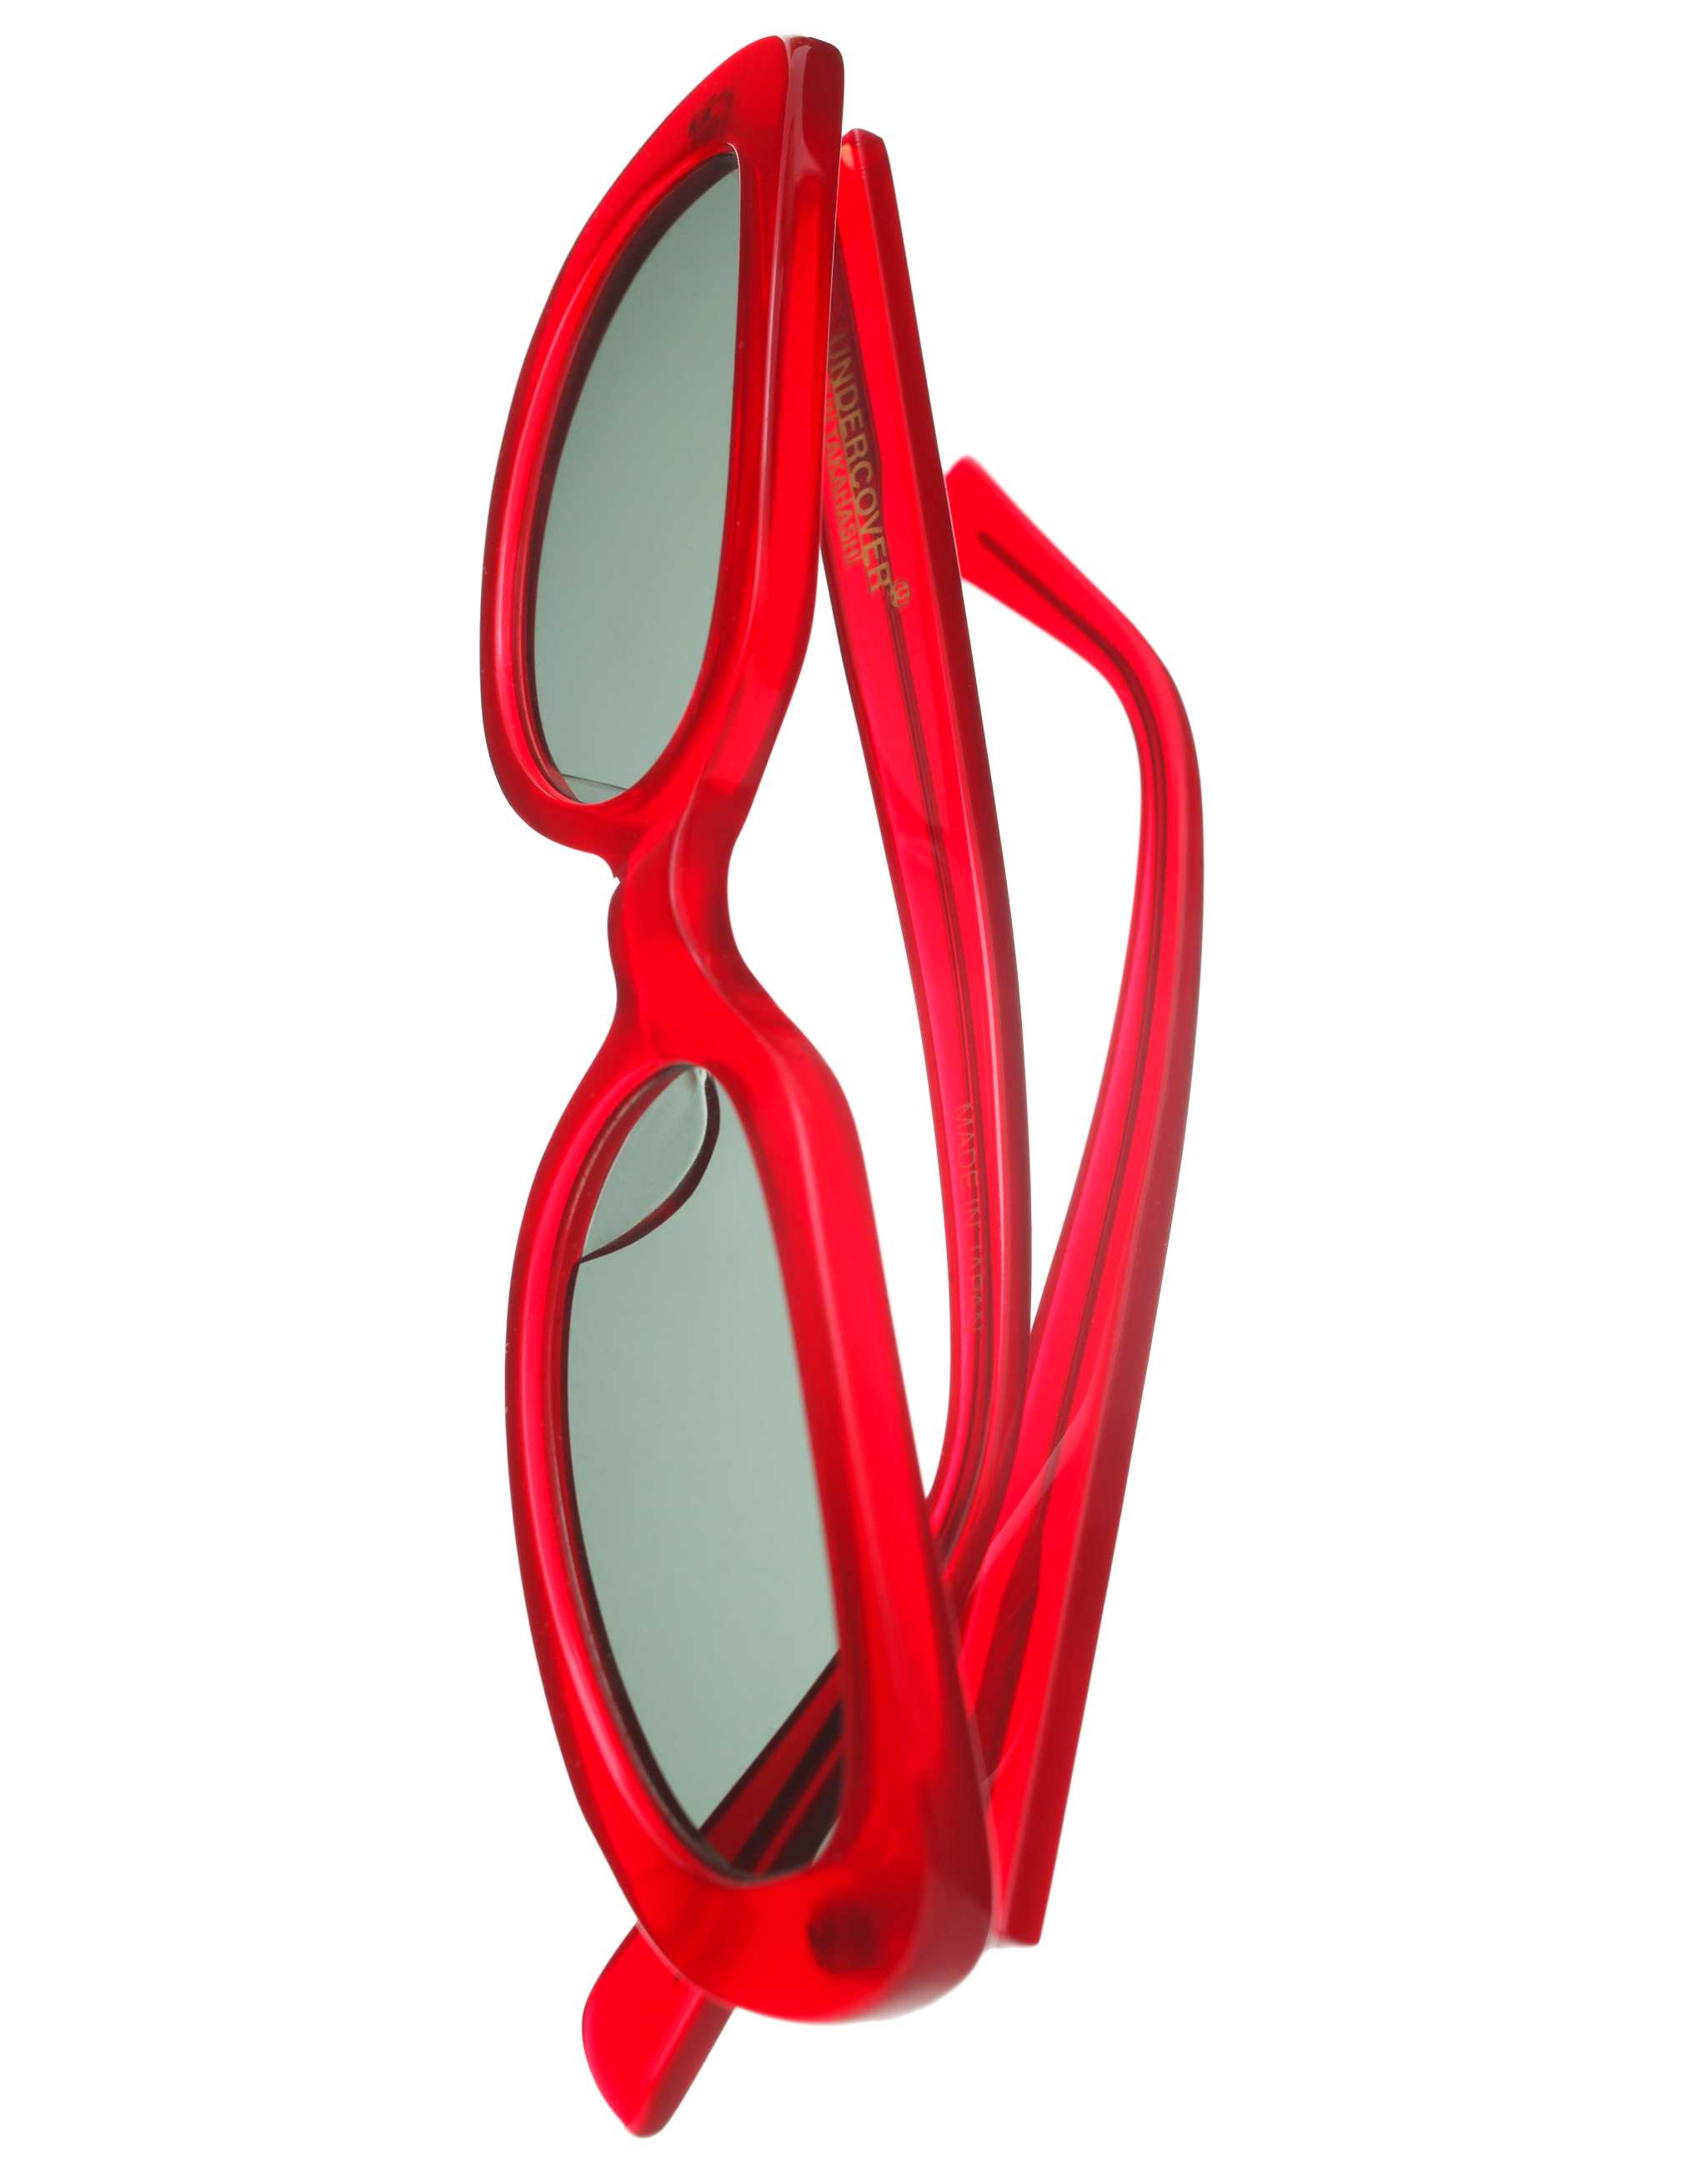 Овальные очки с красной оправой Undercover UC1C4E02/RED, размер One Size